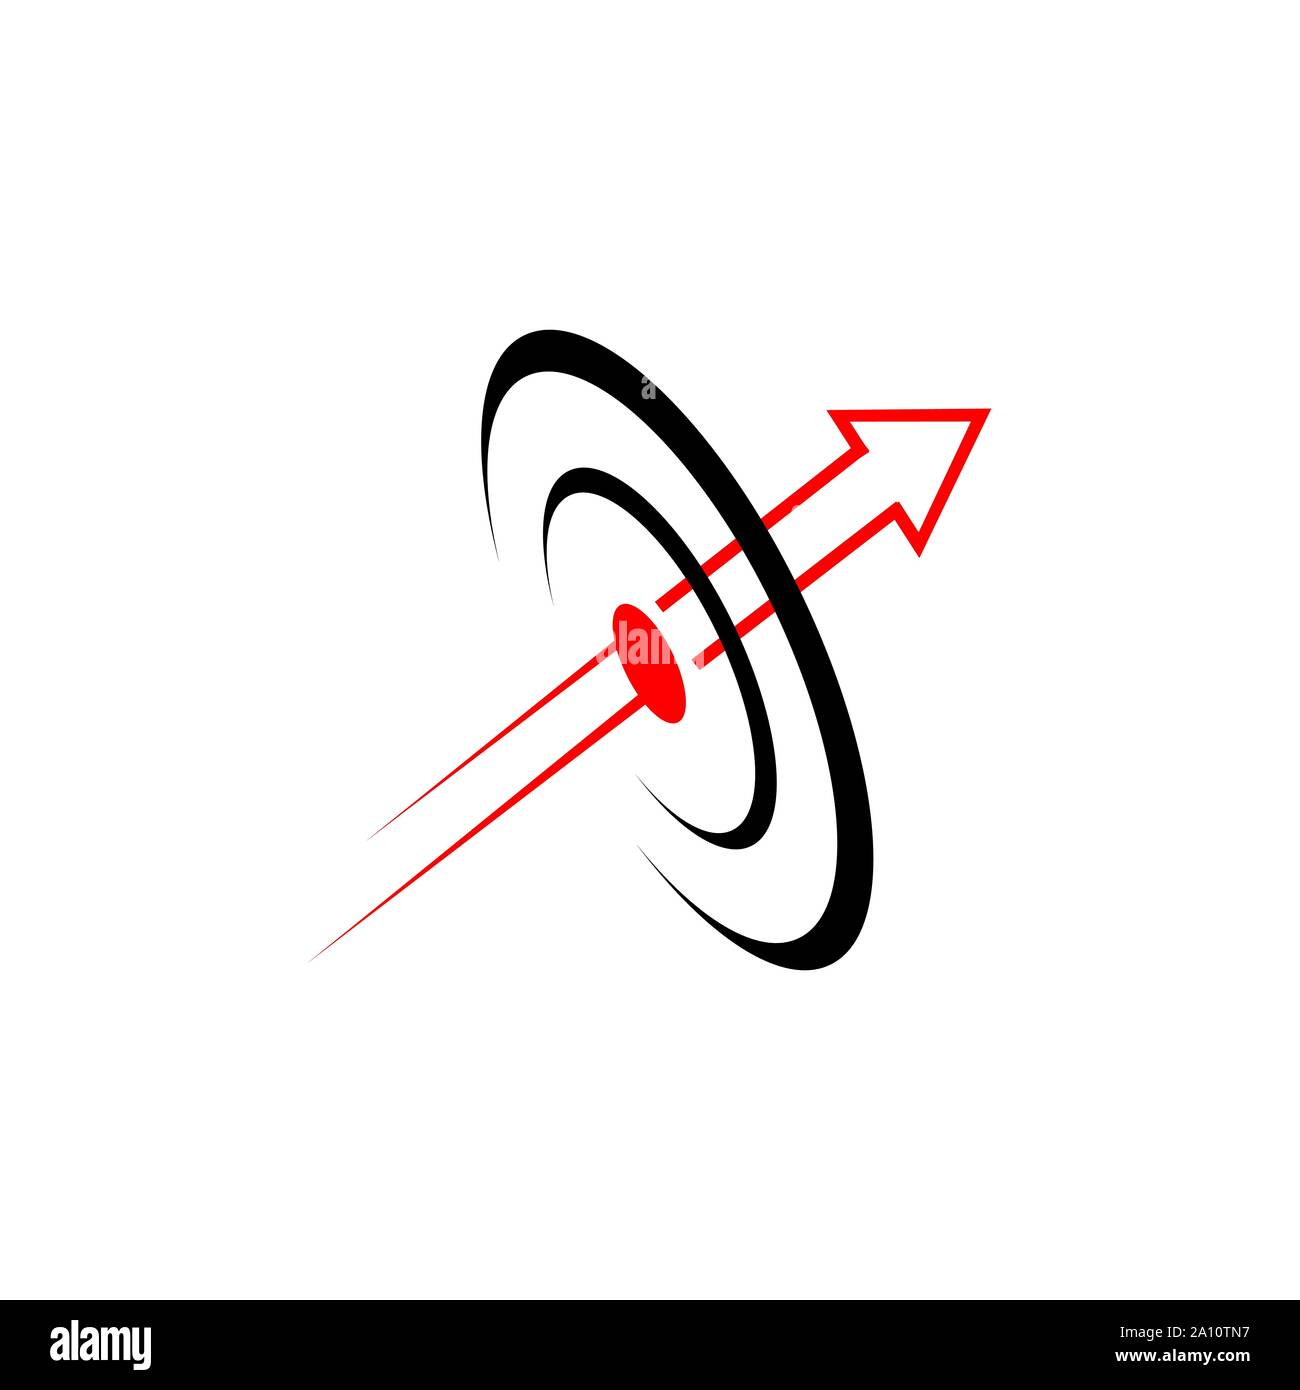 Abstract bulls eye target arrow logo vector design icon Stock Vector